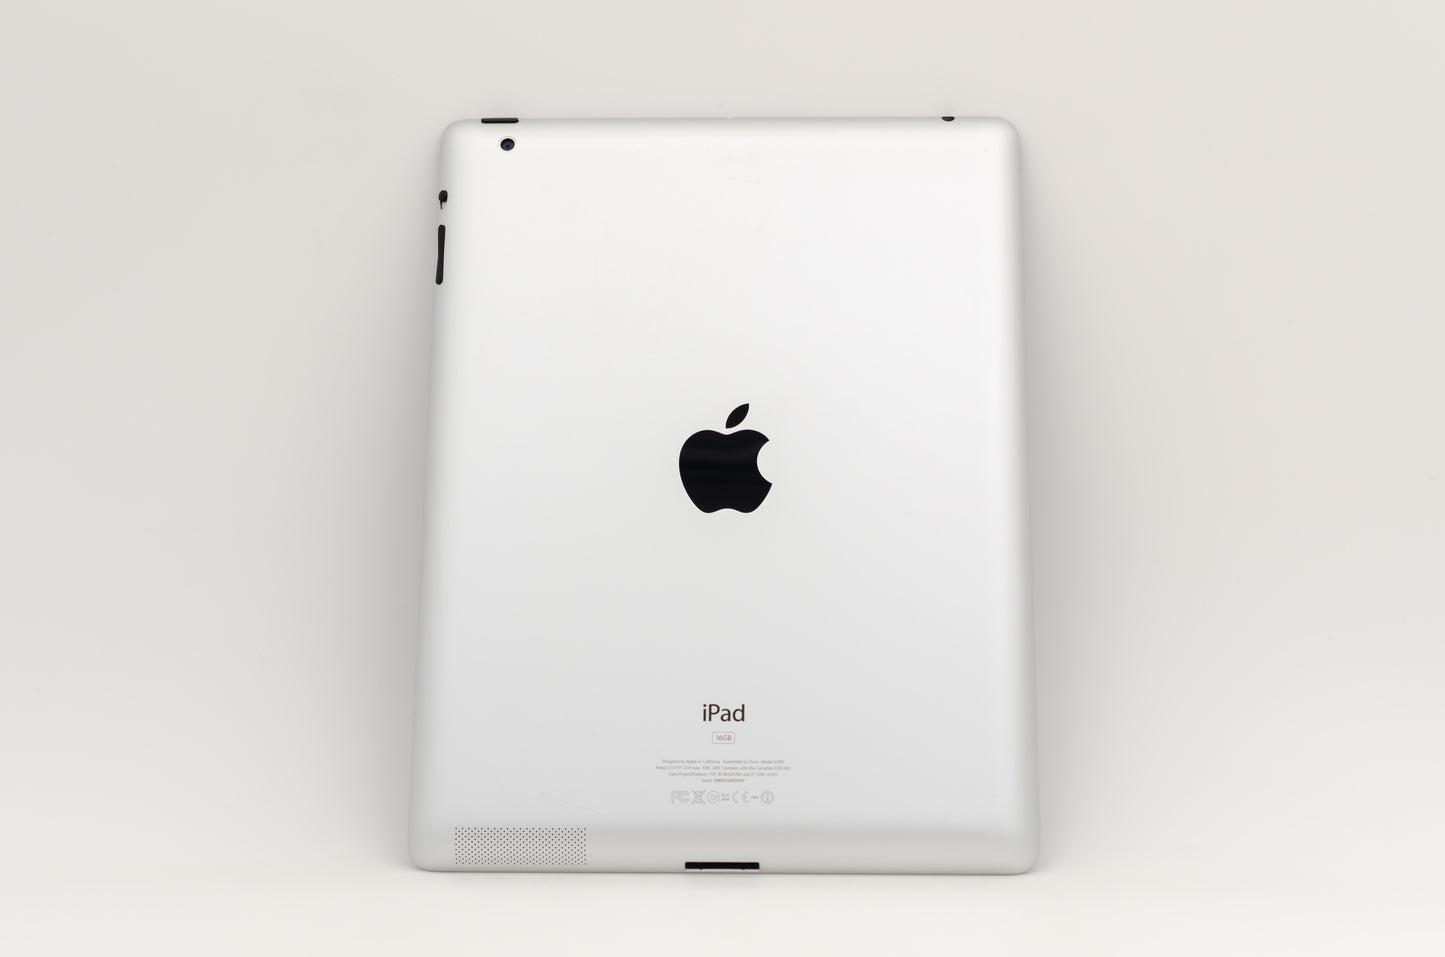 apple-2011-9.7-inch-ipad-2-a1397-silver/black-2